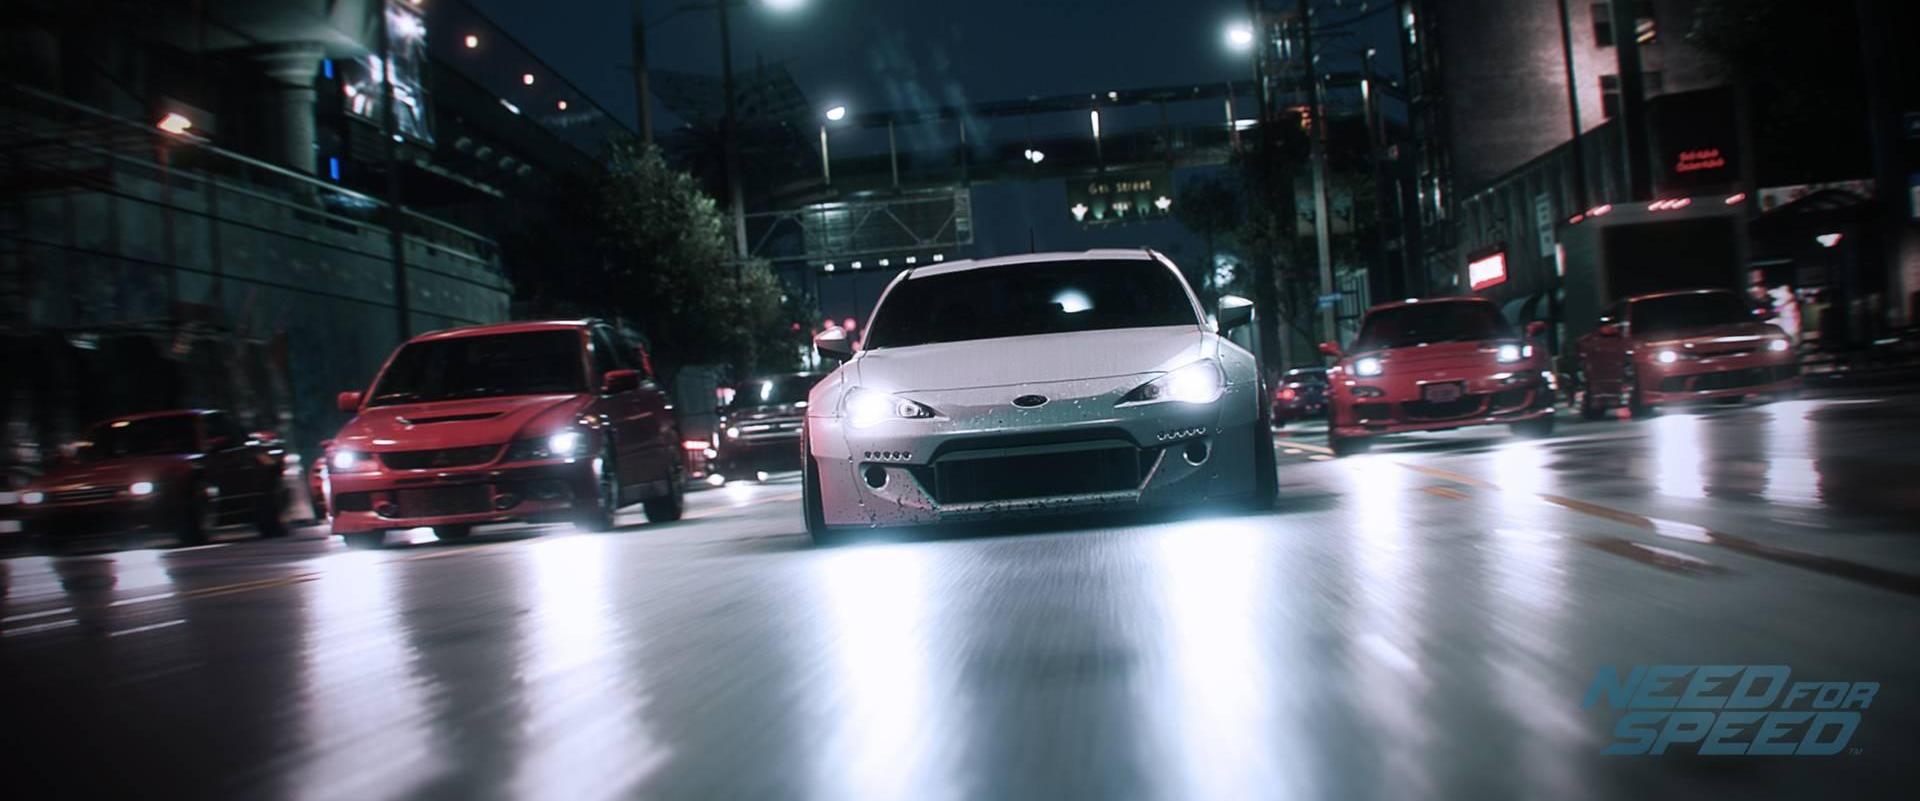 GameStart 2015: 7 thế mạnh "đáng giá" của Need for Speed